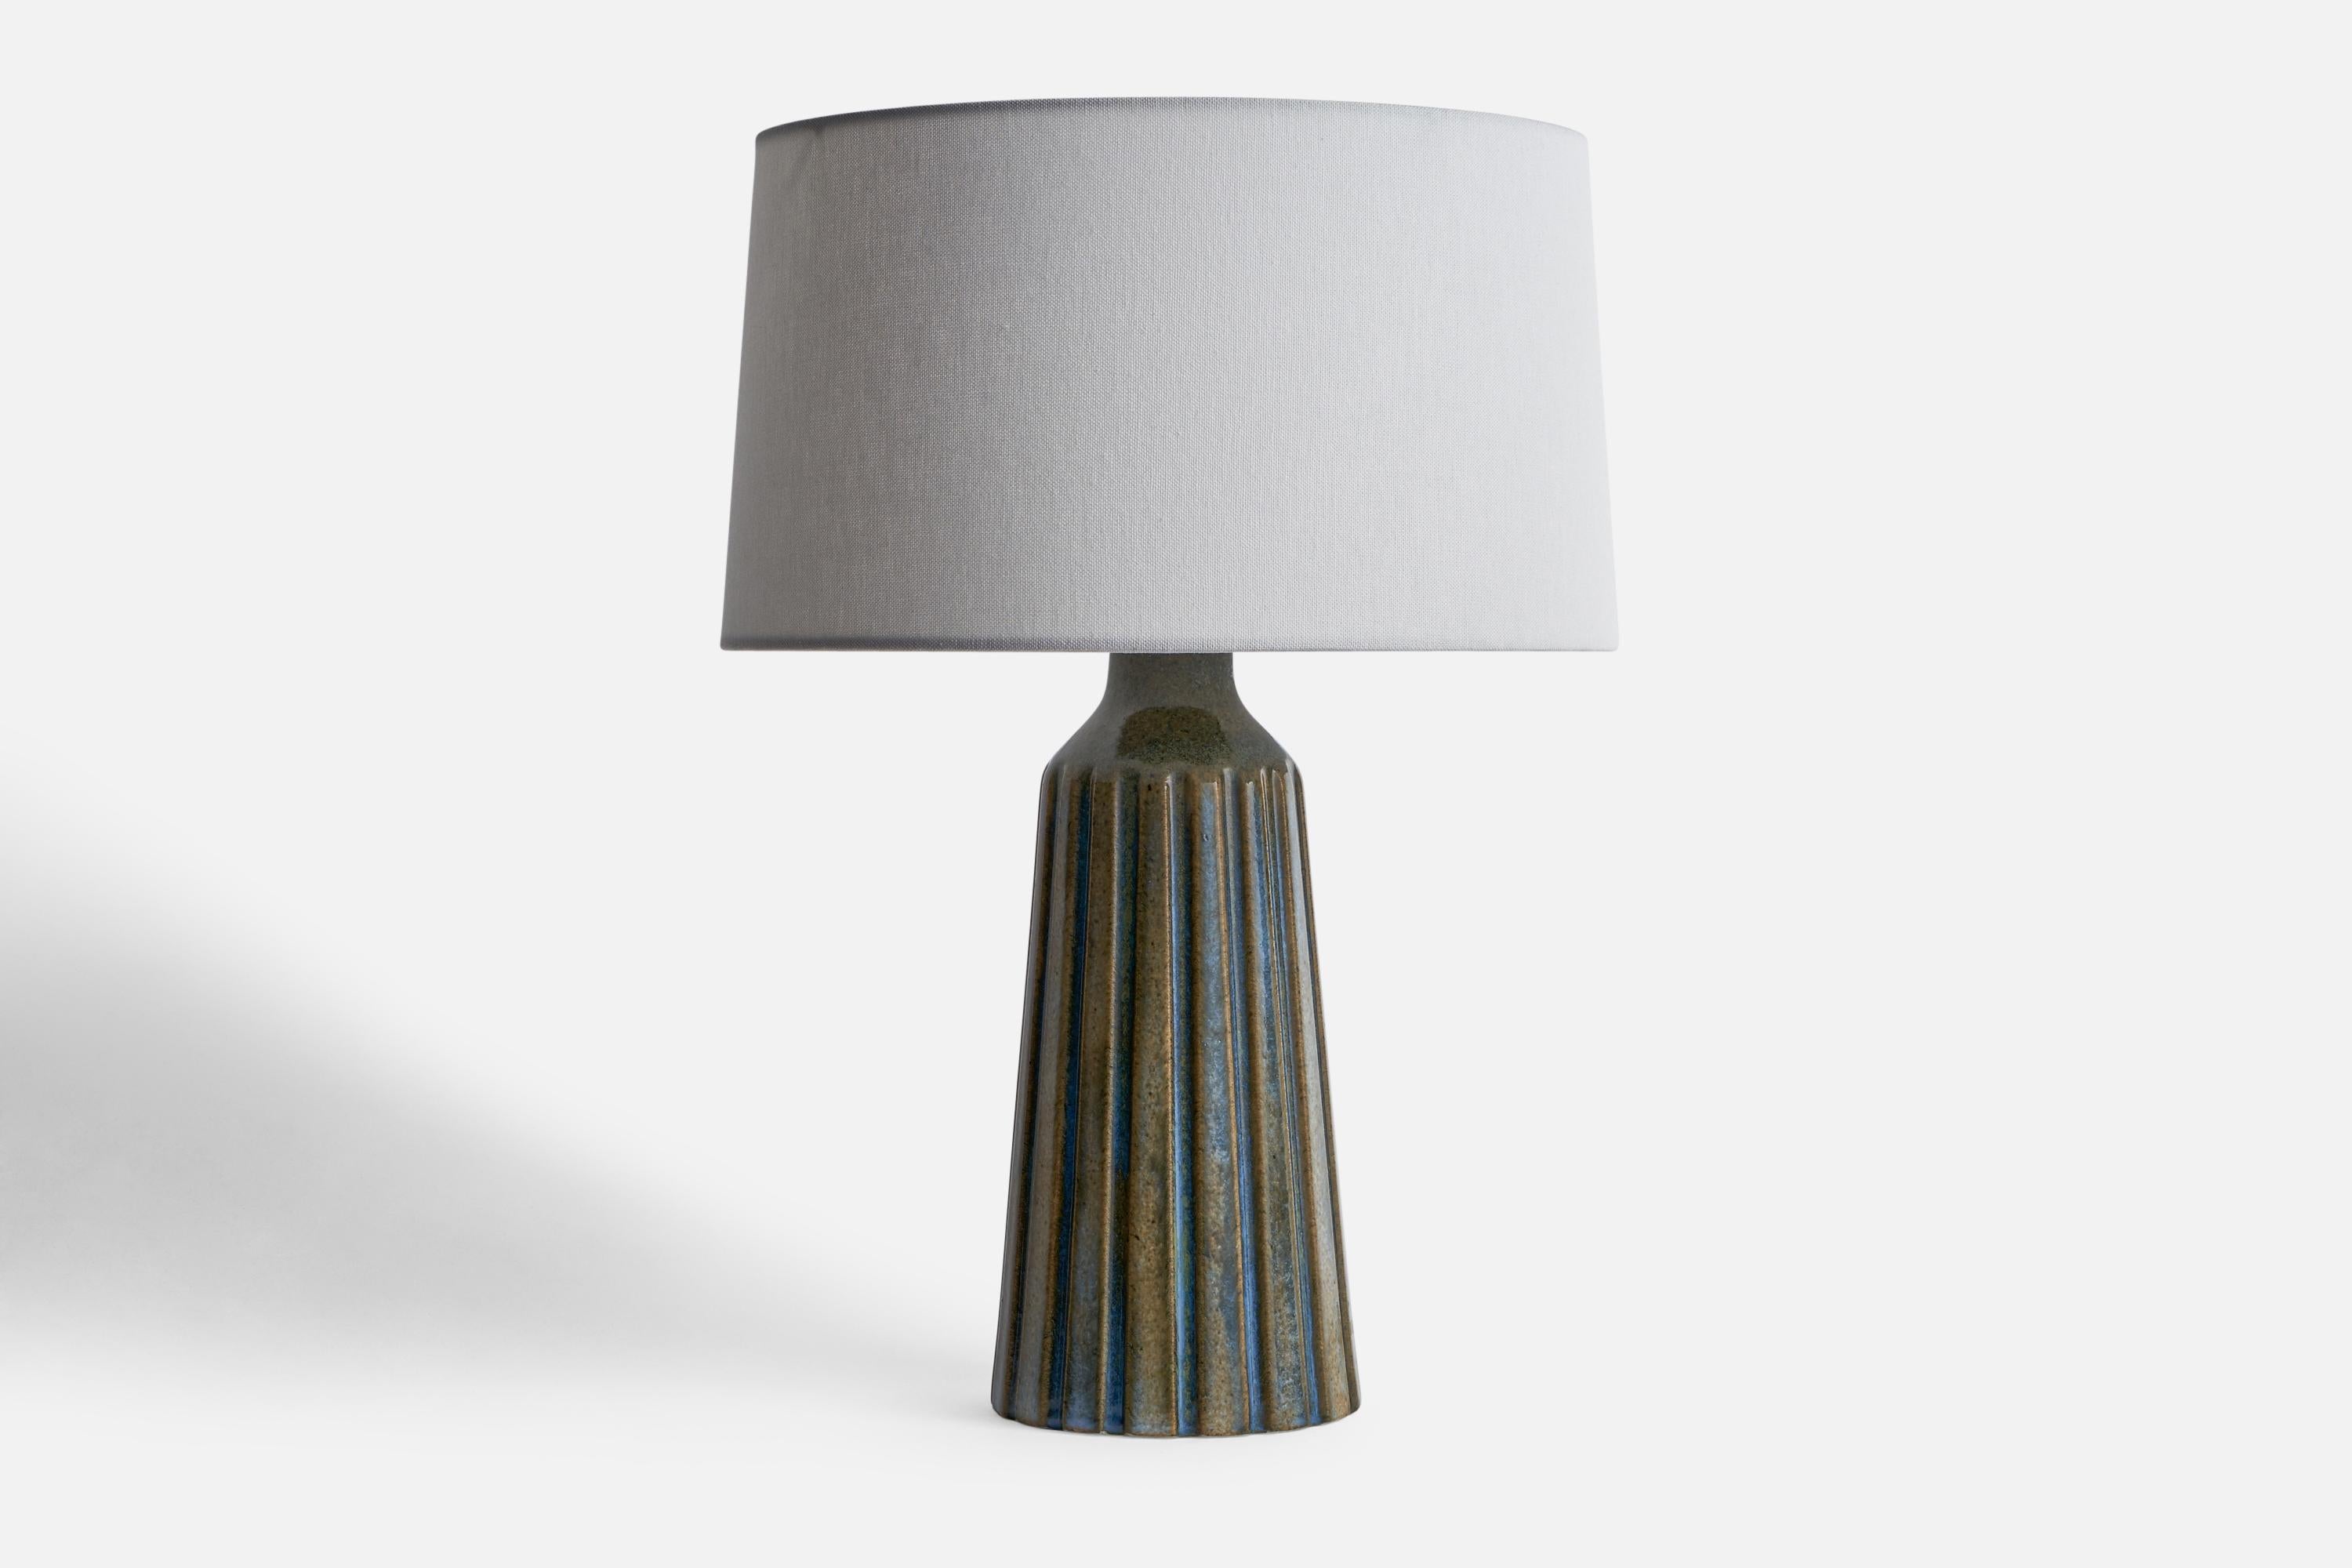 Lampe de table en grès émaillé bleu et gris, conçue et produite par Ego Stengods, Suède, années 1960.

Dimensions de la lampe (pouces) : 13.1